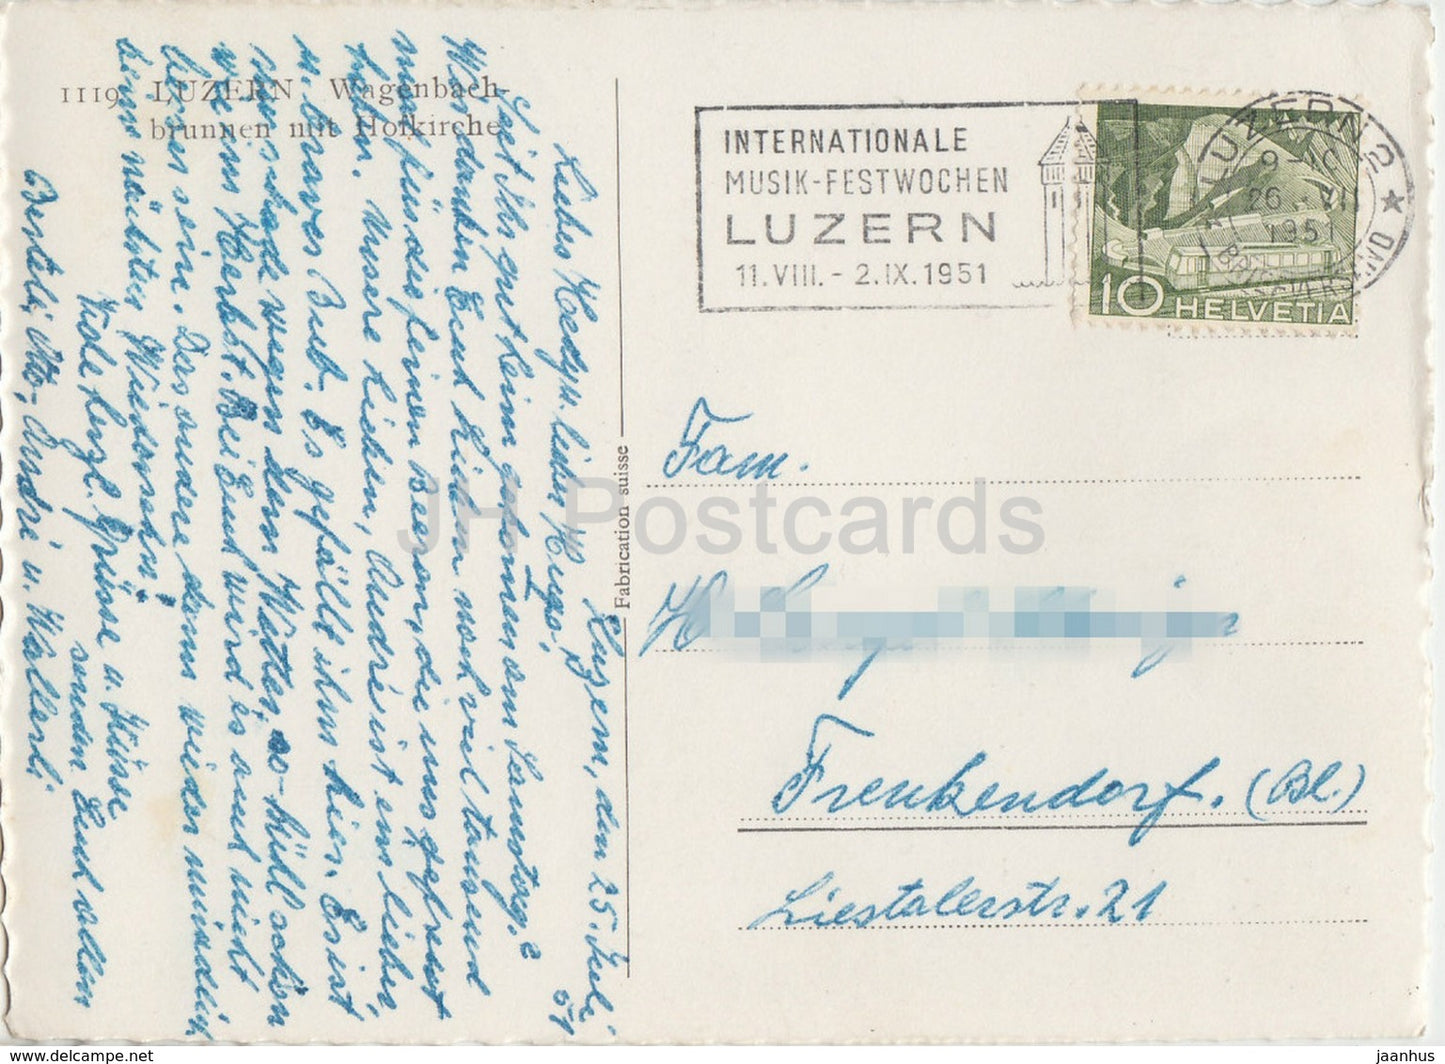 Luzern - Luzern - Wagenbachbrunnen mit Hofkirche - Brunnen - 1119 - 1951 - Schweiz - gebraucht